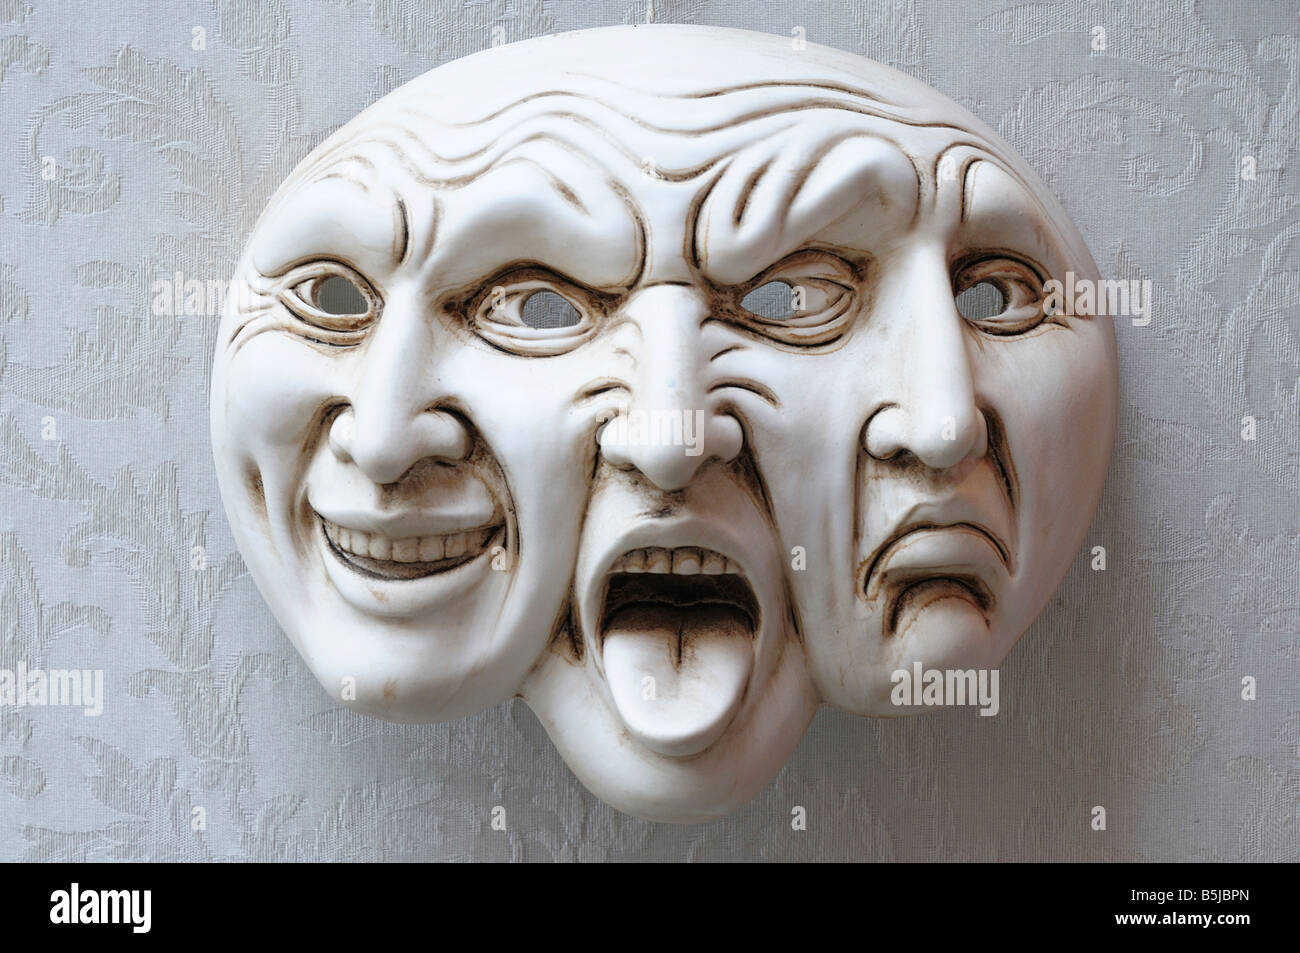 Trifaccia. Drei Gesichter Maske, zeigt Komödie, Tragödie und Wut, traditionellen Karnevalsmaske von Venedig. Stockfoto